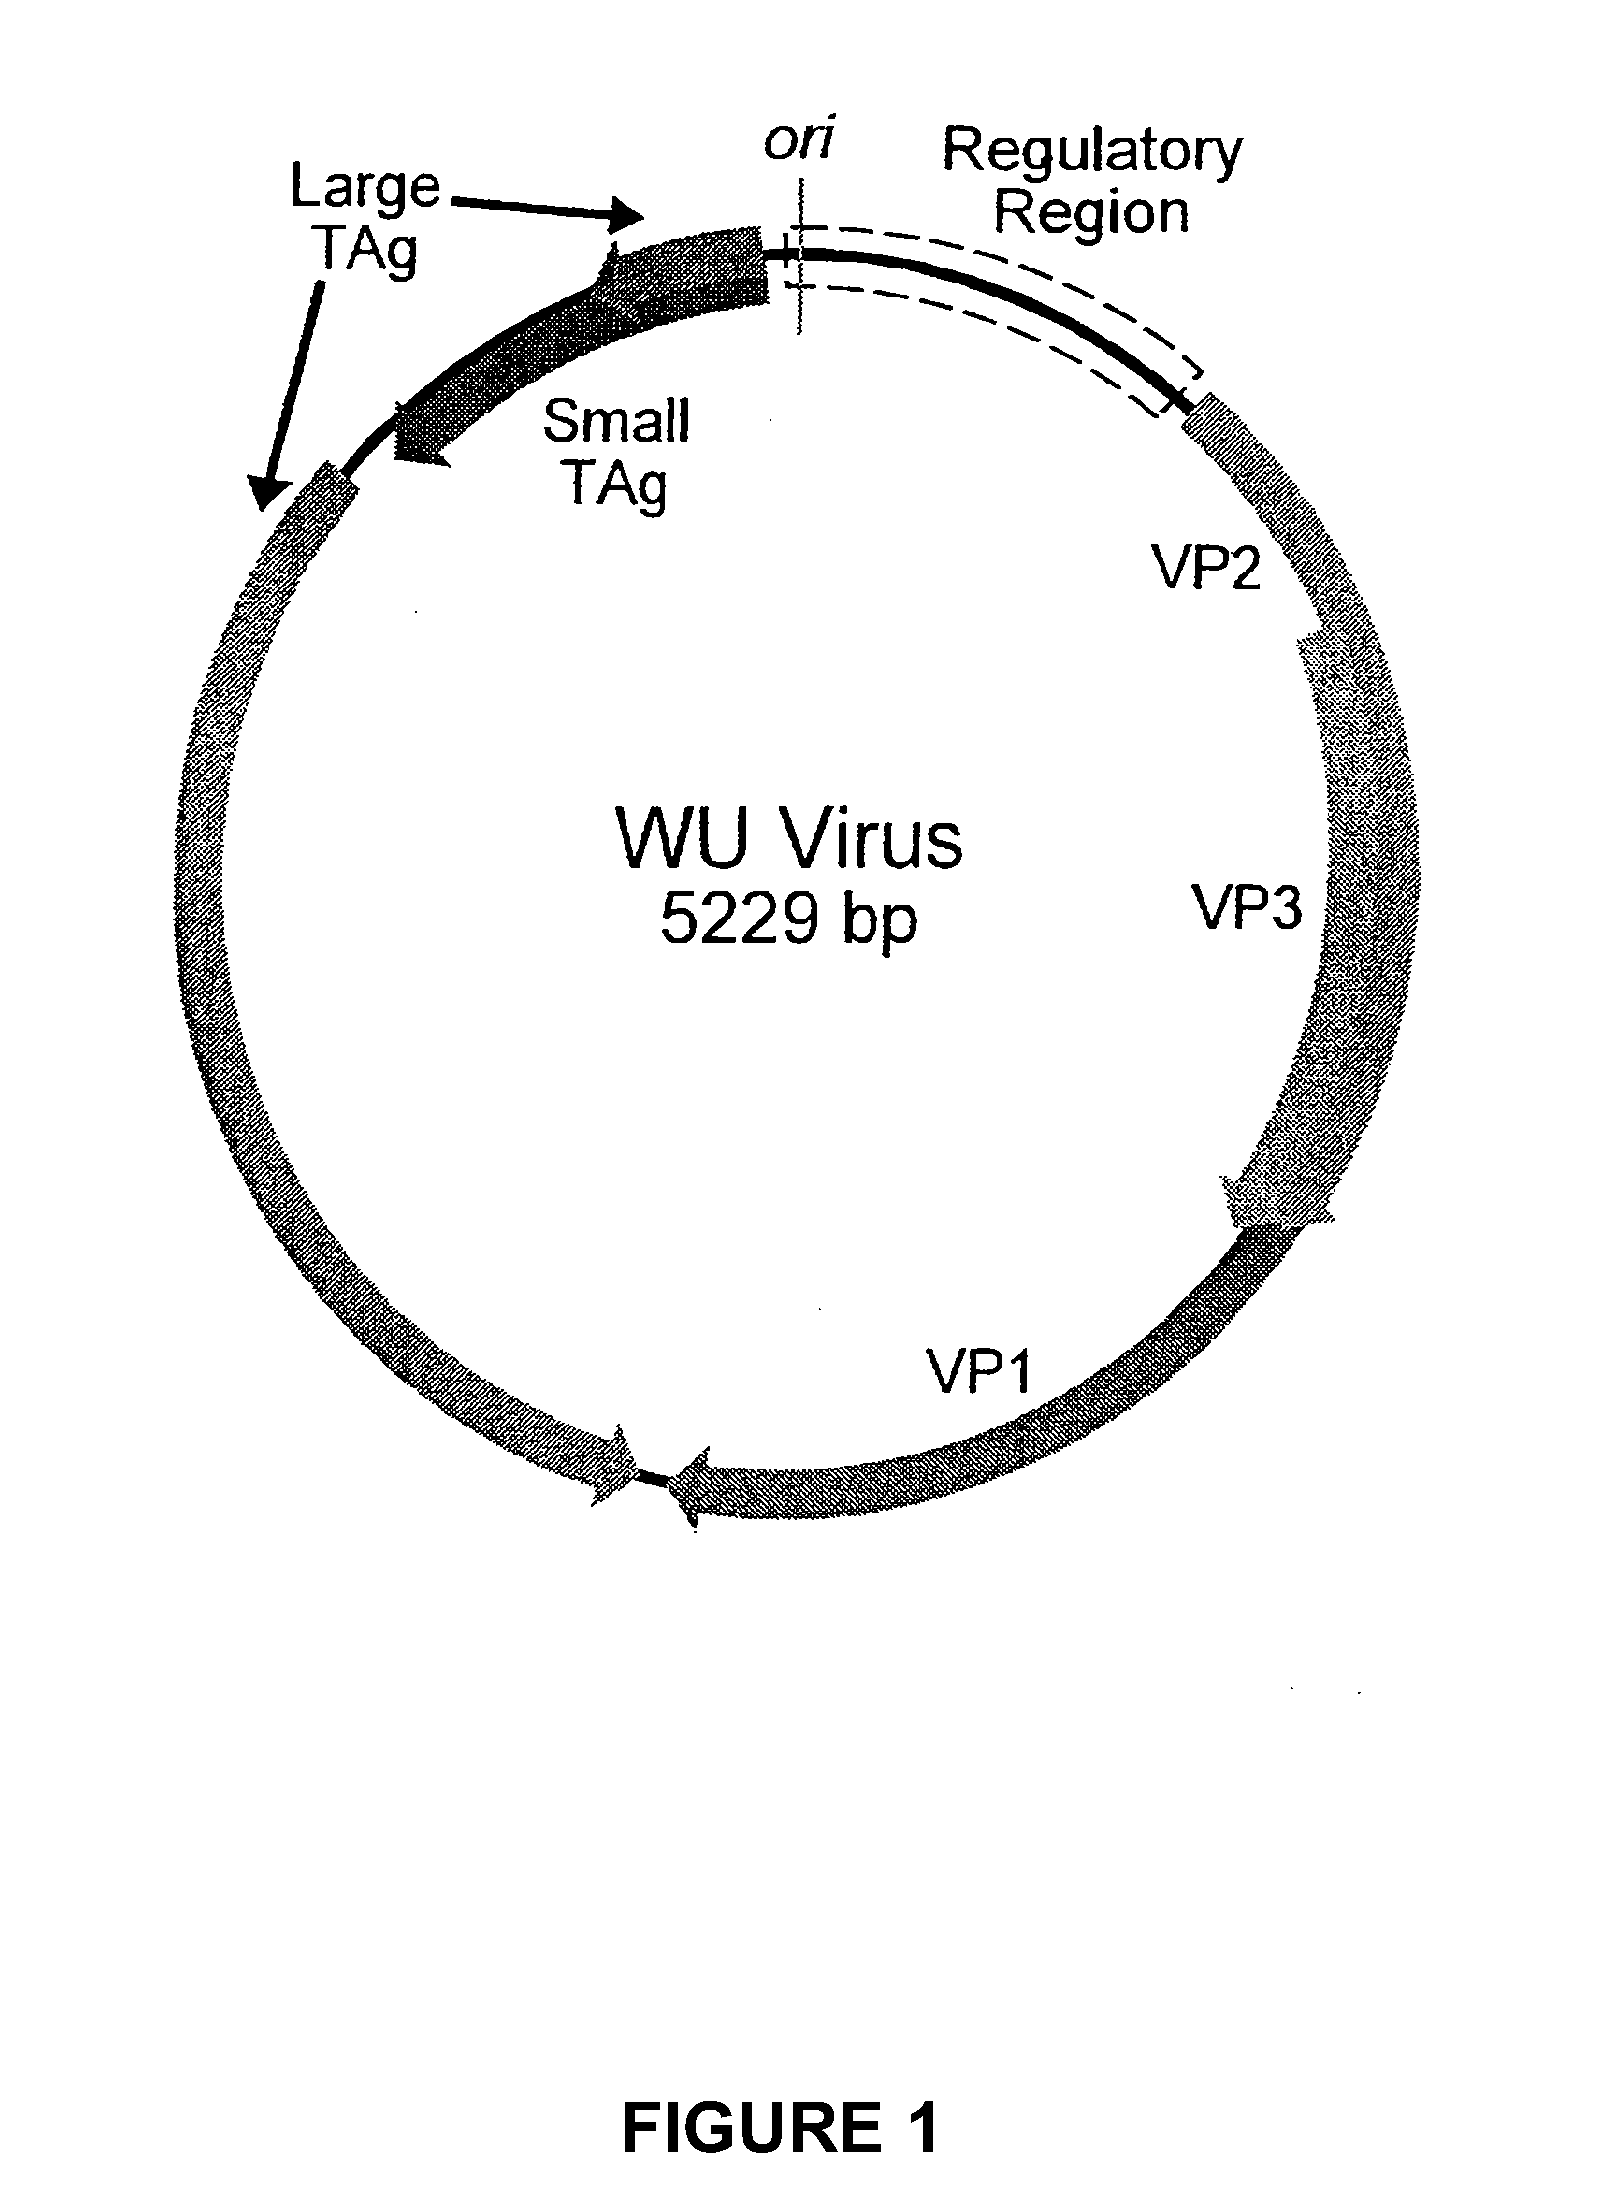 Novel human polyomavirus